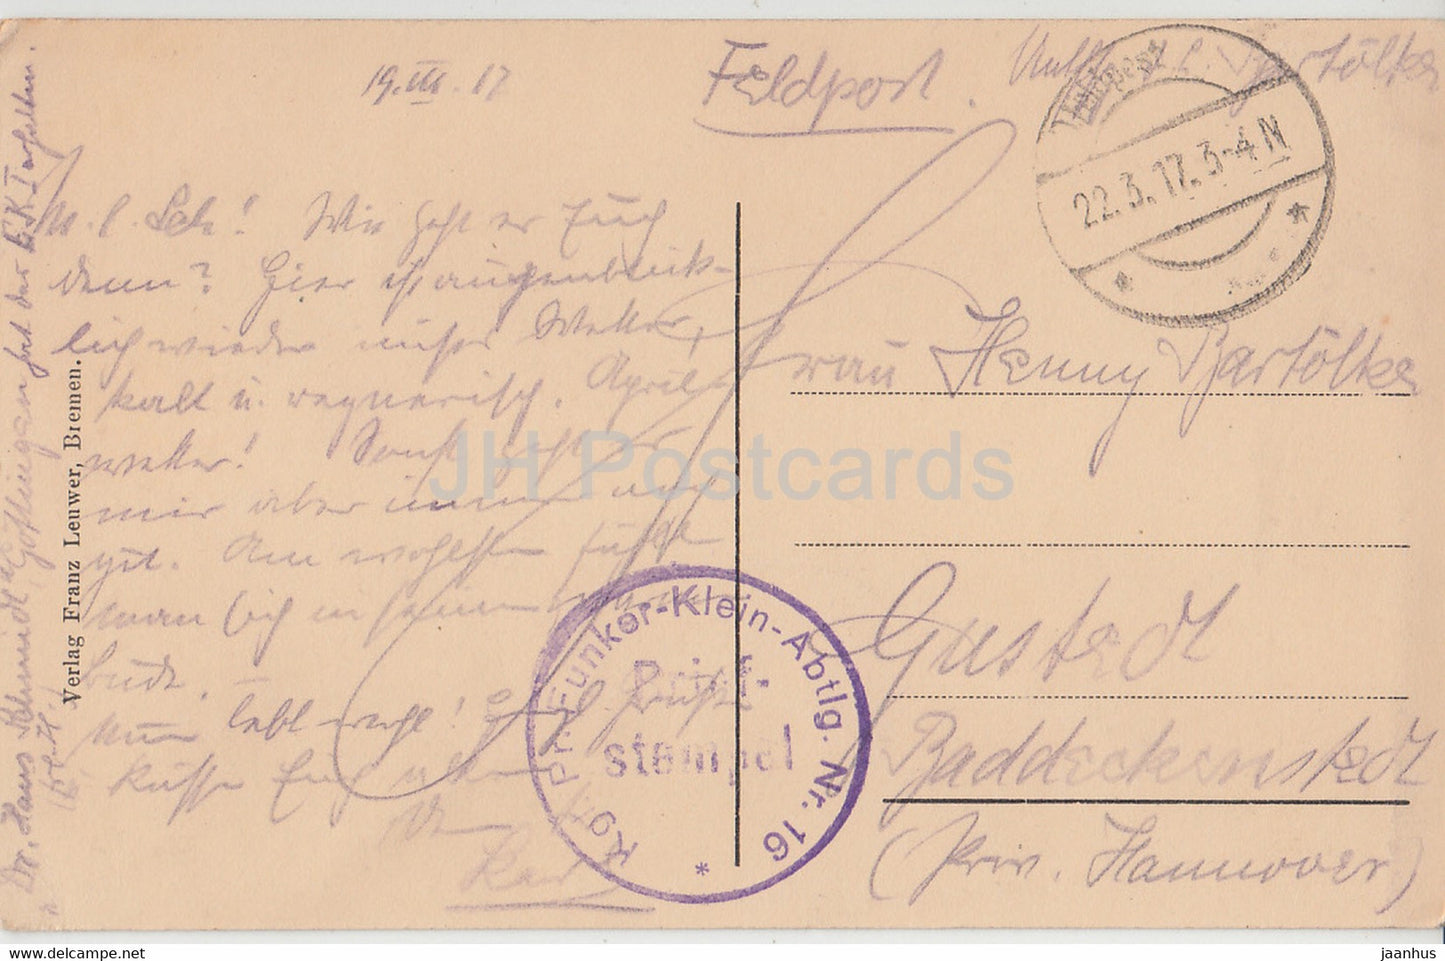 Cambrai - Rathaus - Feldpost - alte Postkarte - 1917 - Frankreich - gebraucht